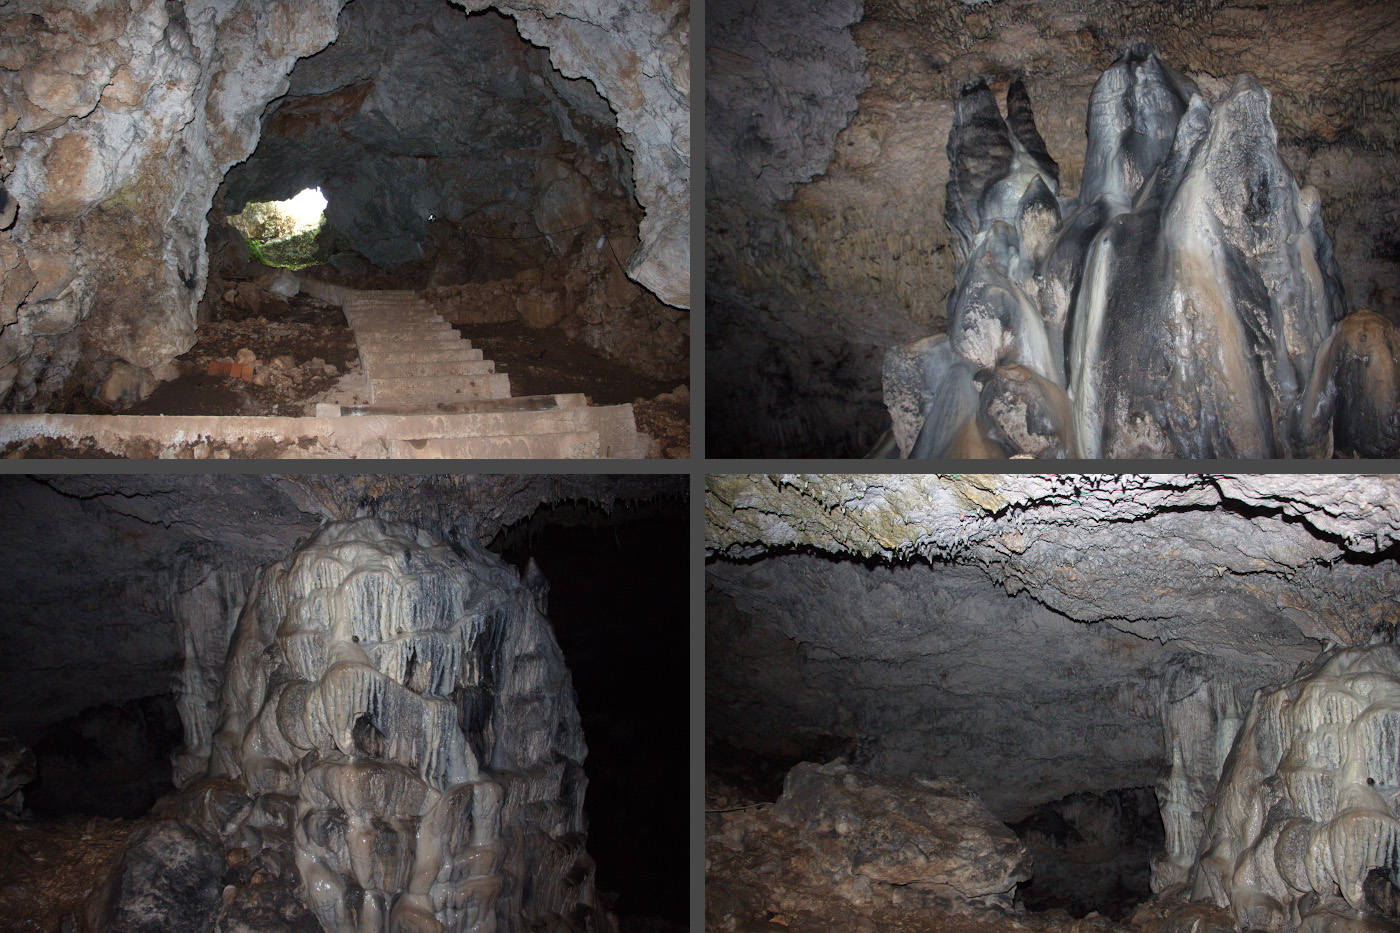 26. Пещера Peynirdeliği Mağarası на плато Гёдельме. Куда поехать из Кемера на экскурсию самостоятельно. Снимок предоставлен другом сайта Вероникой Бурликовой. Снято на камеру Canon EOS 650D Kit EF-S 18-135mm f/3.5-5.6 IS STM в 2015 году.